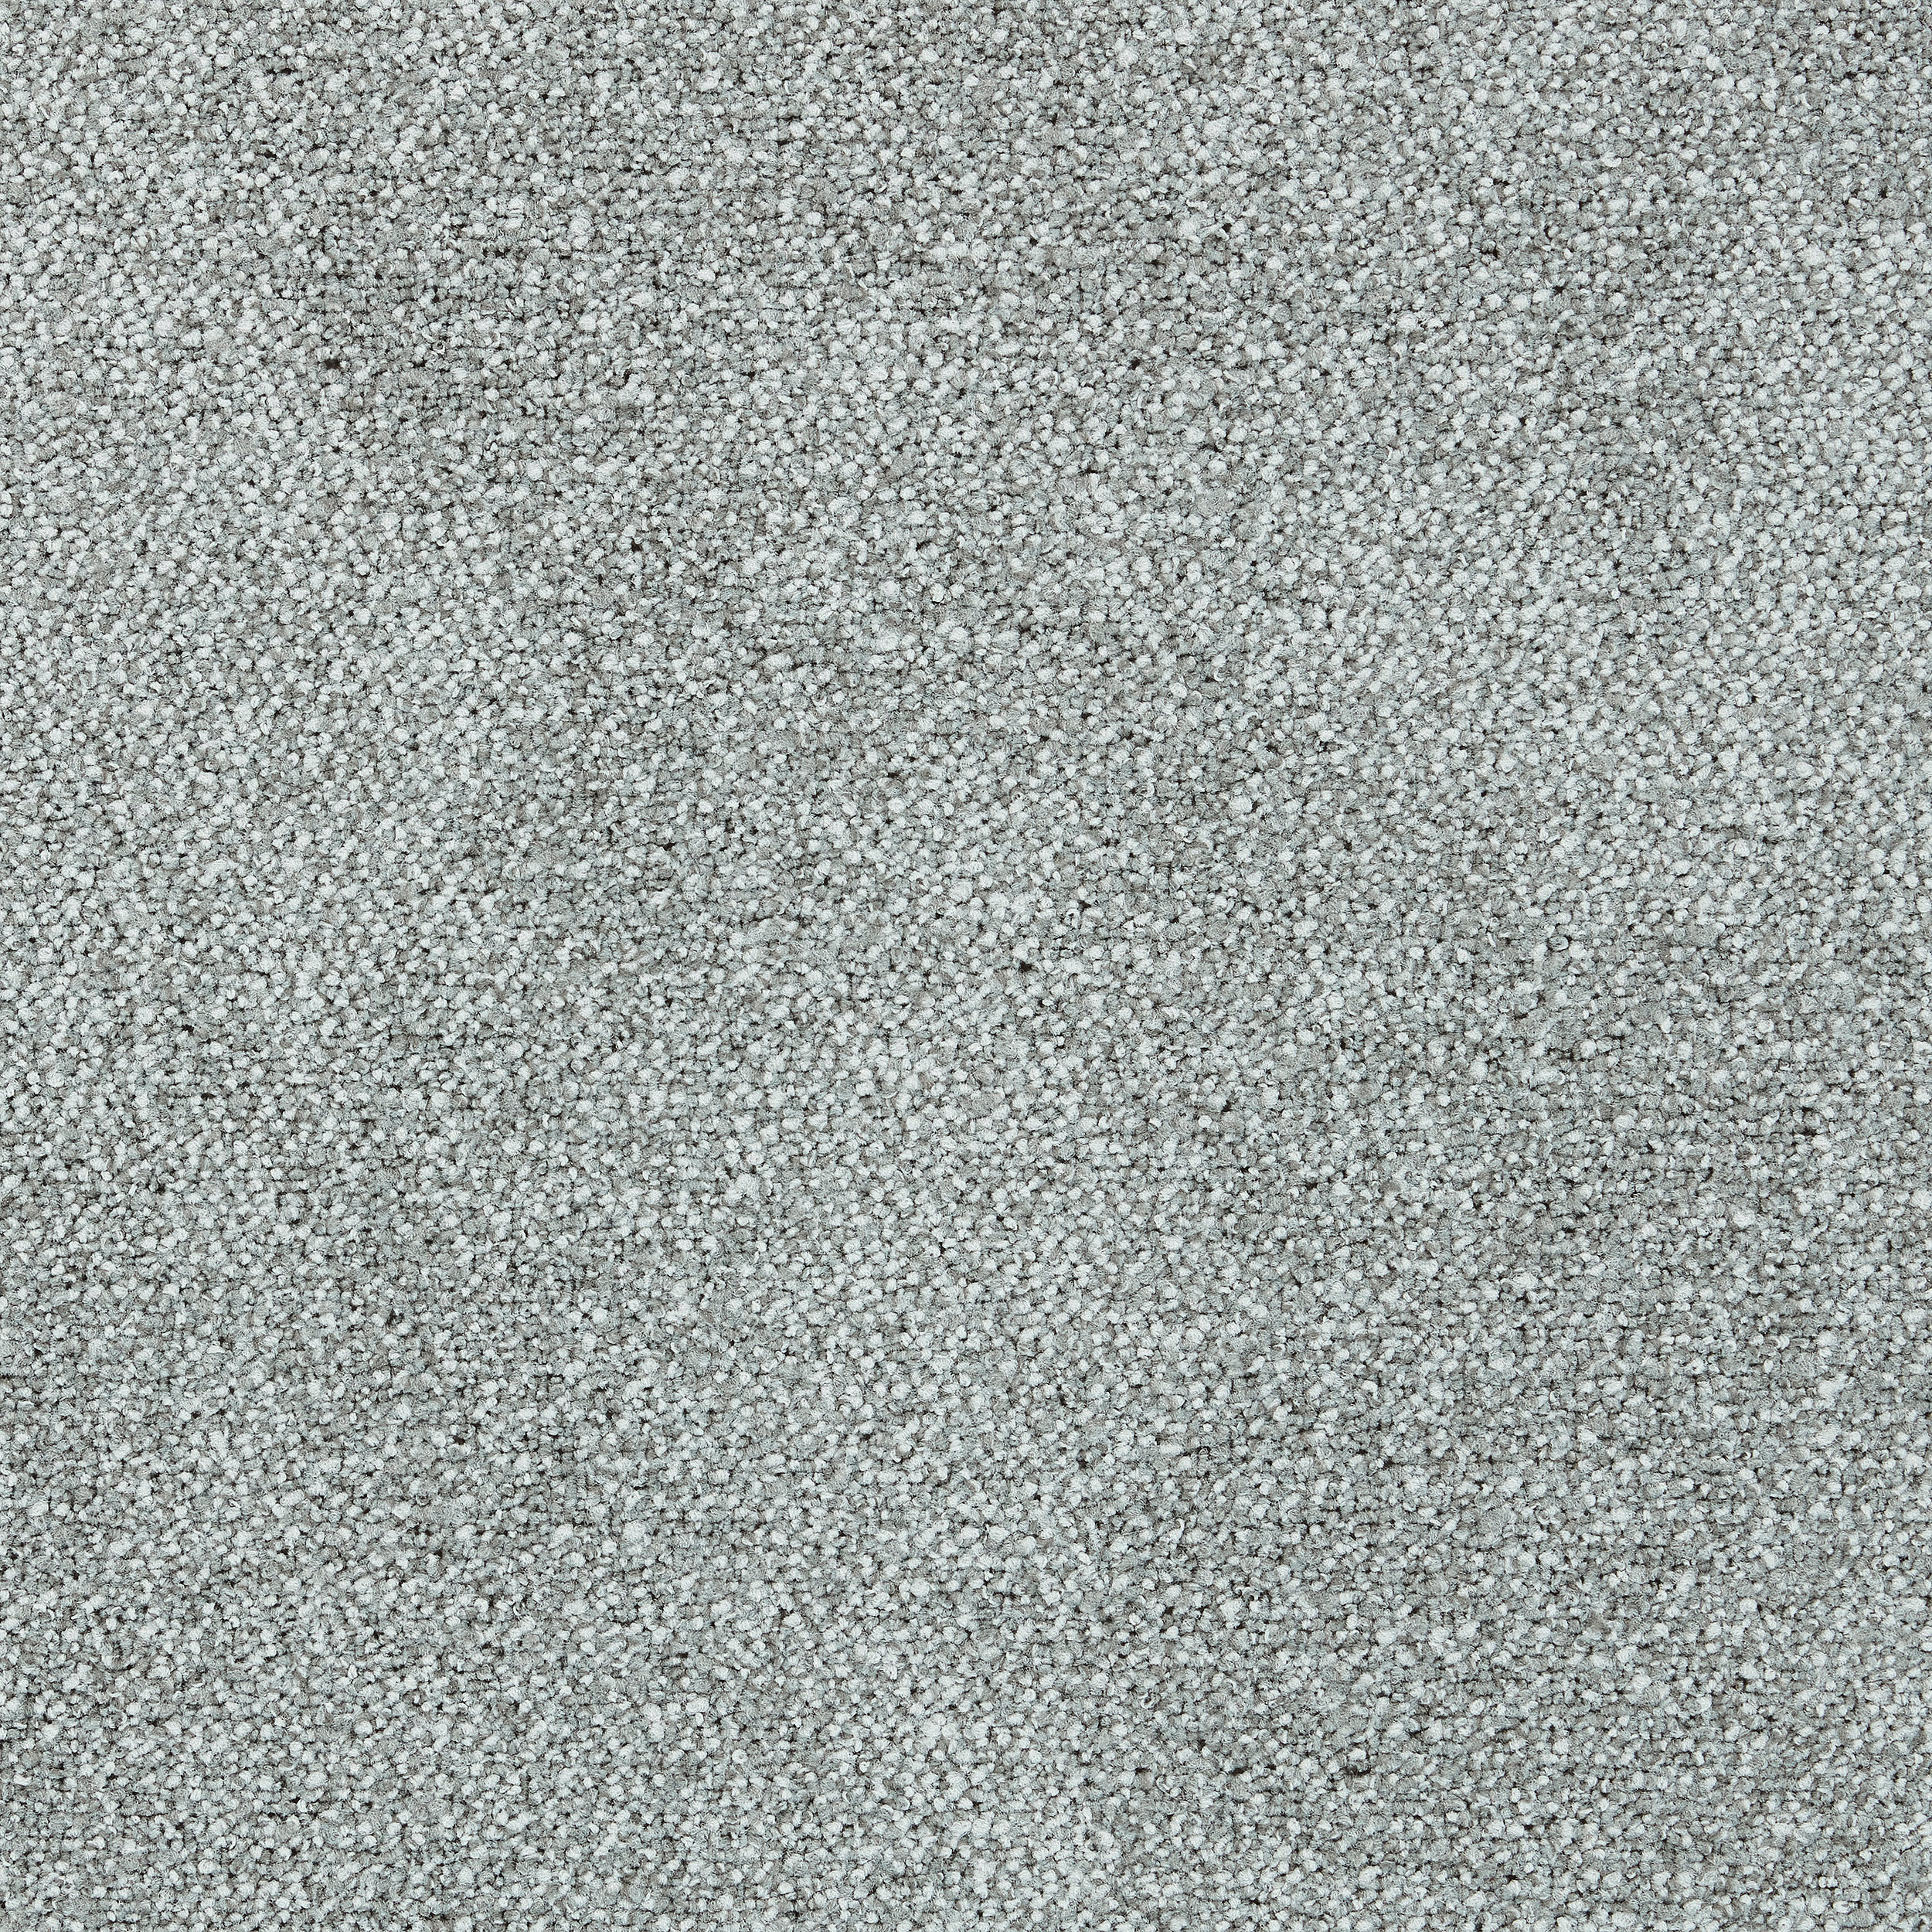 Recreation carpet tile in Create Bildnummer 6